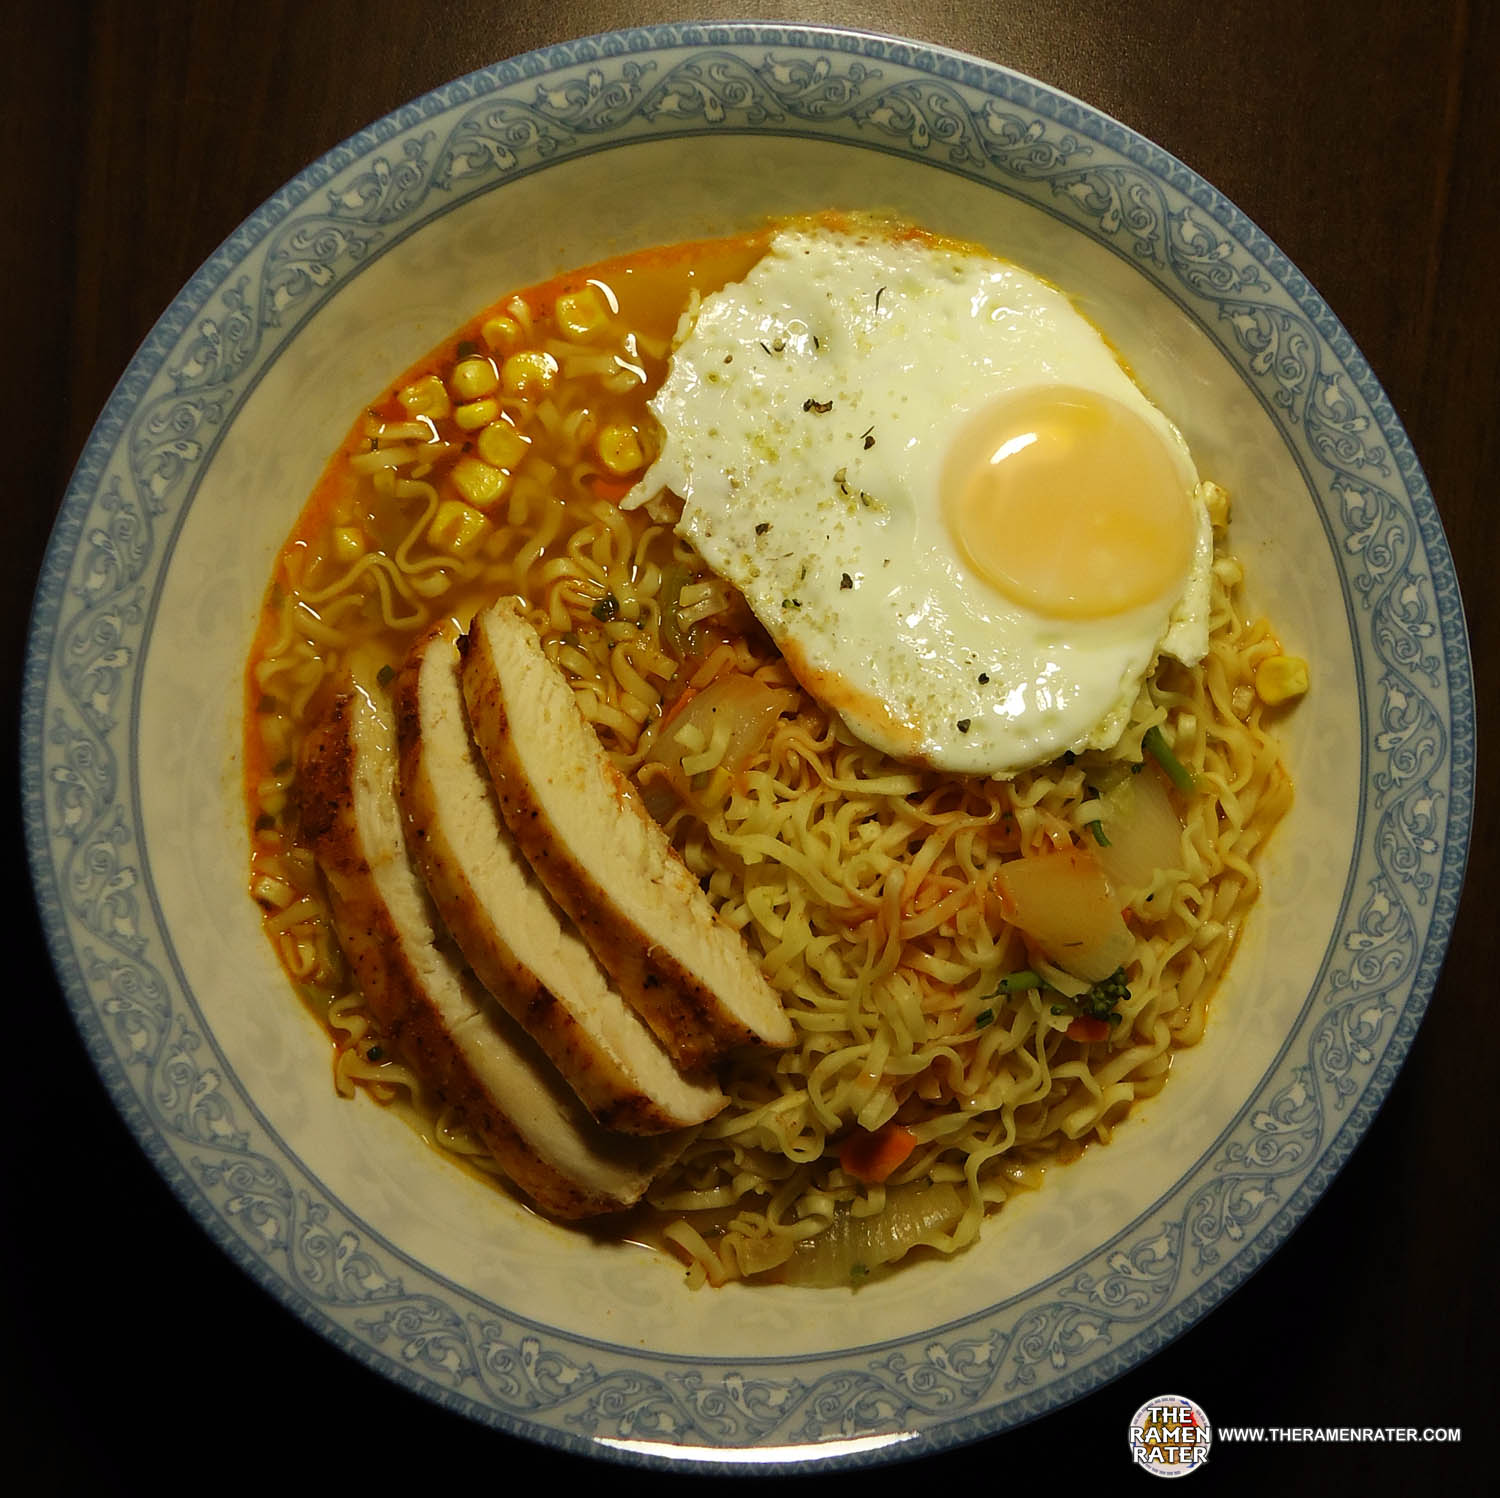 #1011: Maruchan Bowl Hot & Spicy Chicken Flavor Ramen Noodles With